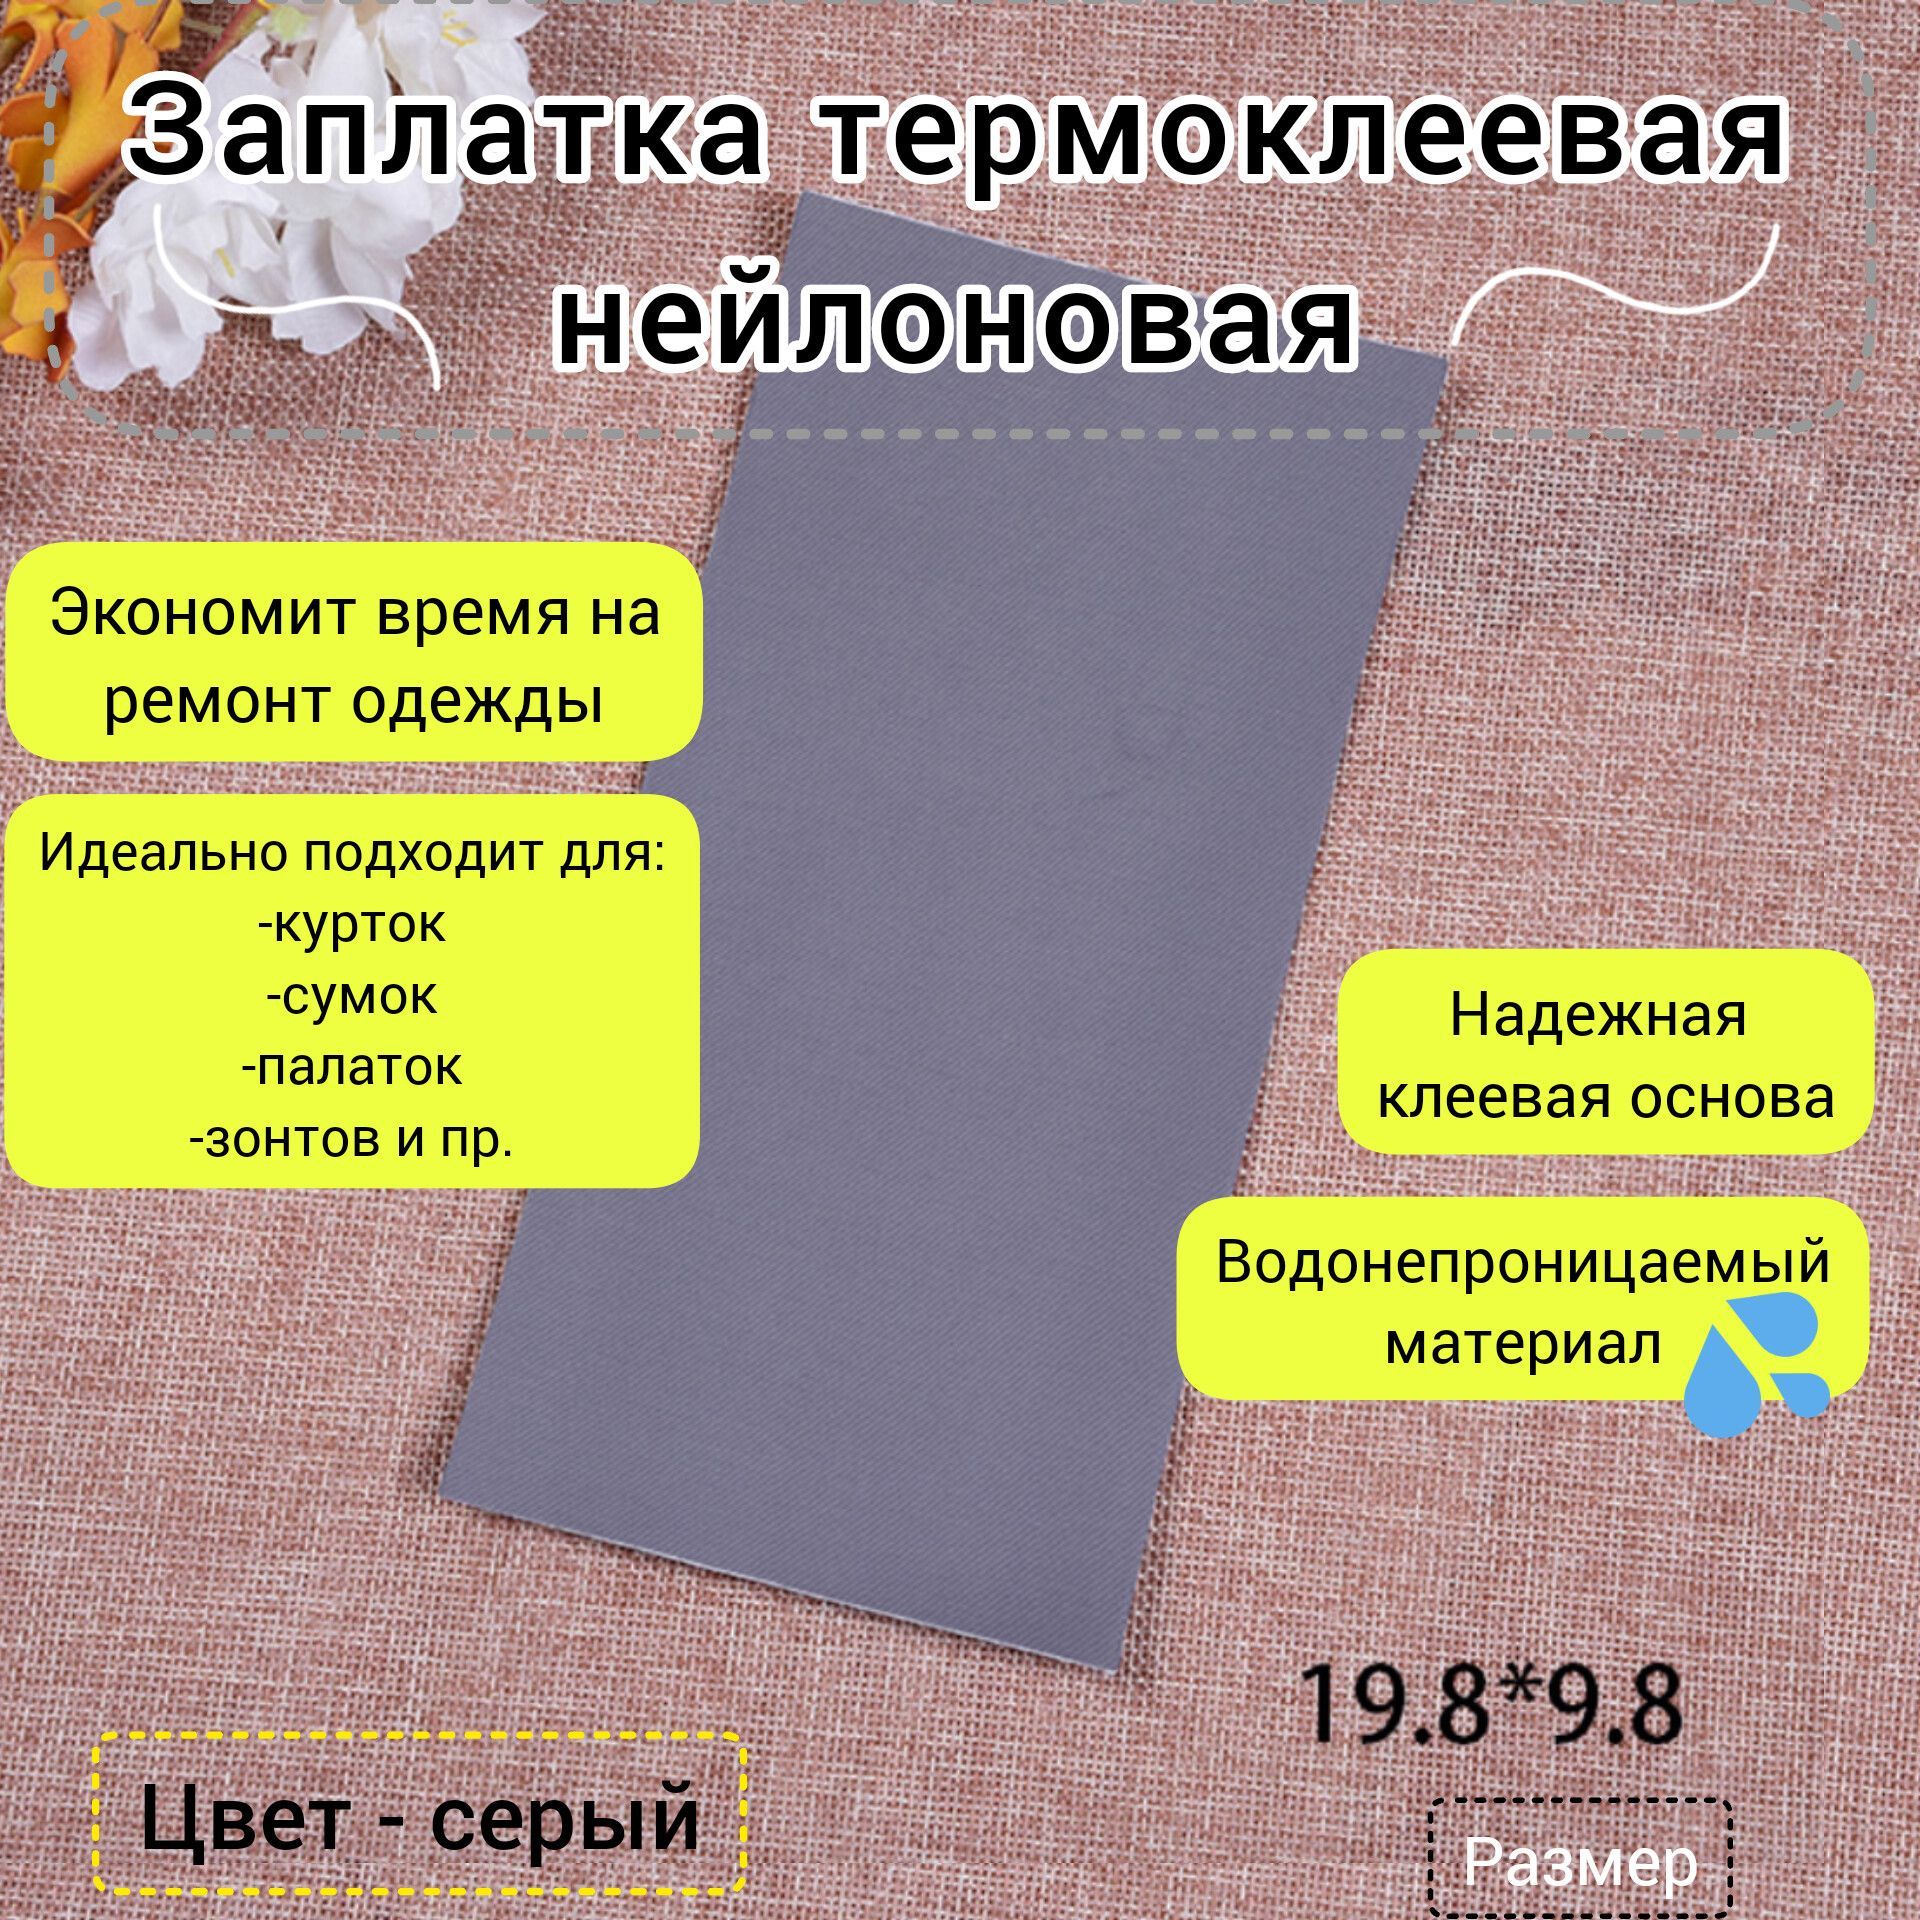 Заплатки термоклеевые для ремонта одежды 5шт, 10*14см, 5,7*6,7см, 5,2*7,8см, цвет черный